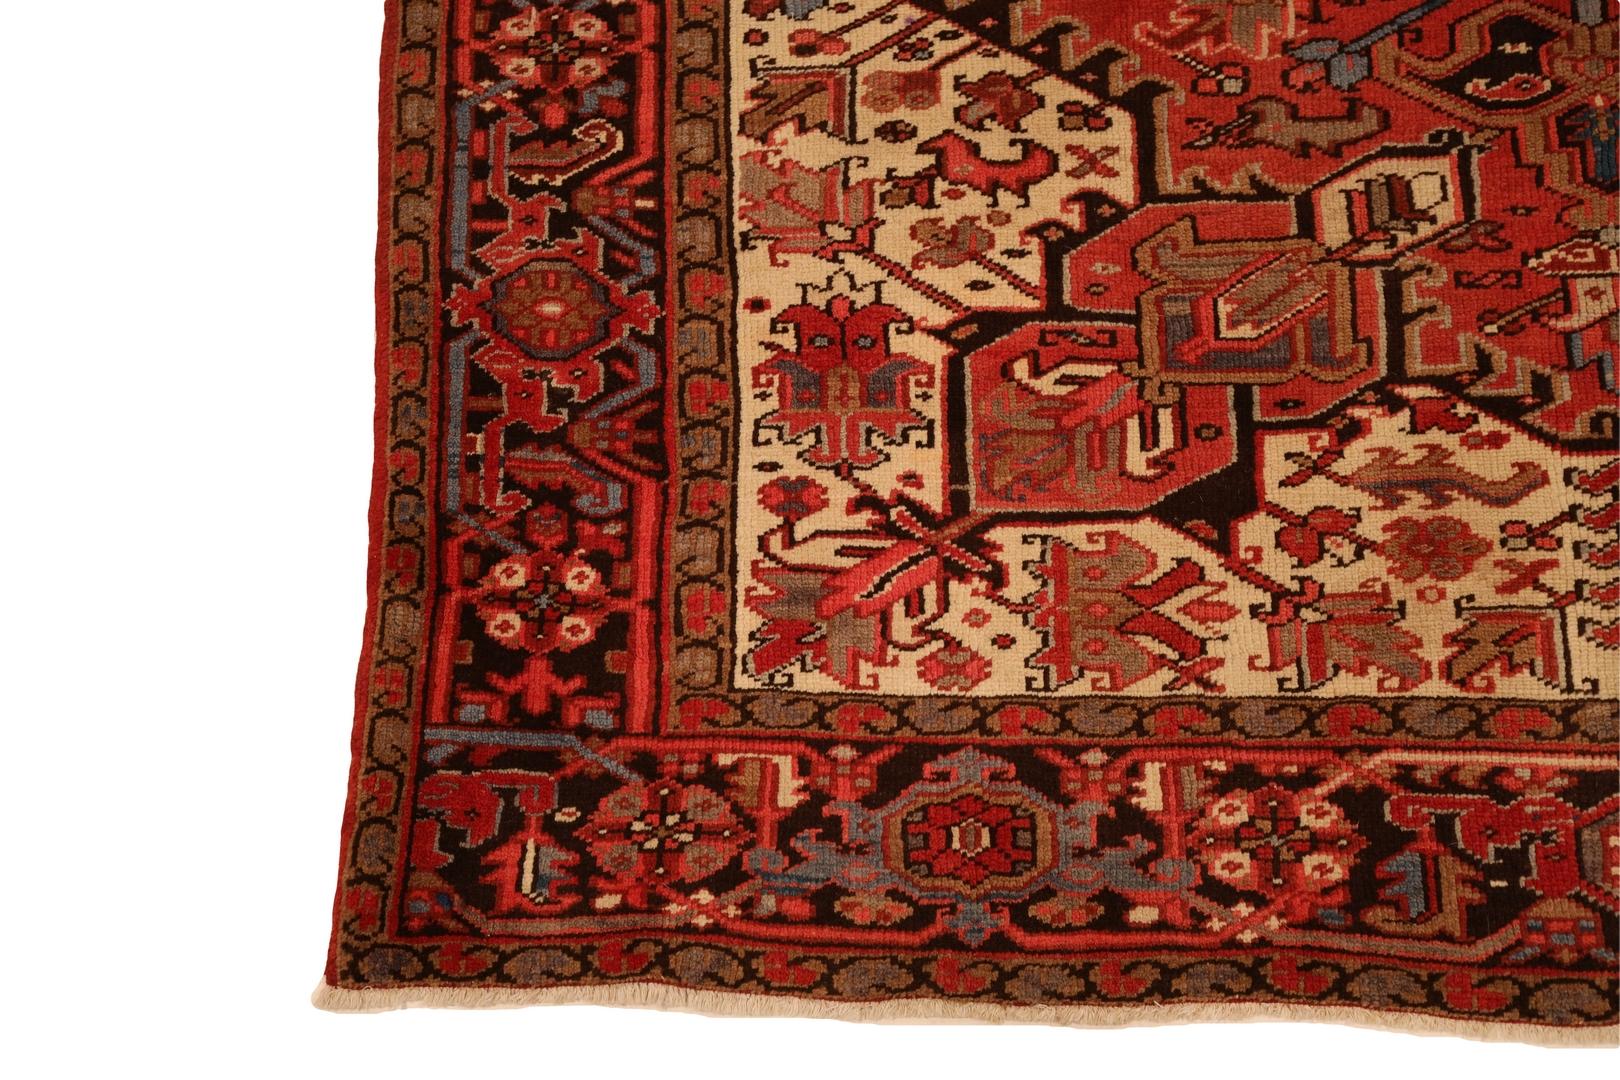 Nous vous présentons notre tapis Heriz, un témoignage de l'allure intemporelle de l'artisanat persan. Ce tapis resplendissant présente un fond rouge captivant, ouvrant la voie à une pièce maîtresse étonnante - un grand médaillon qui occupe le devant